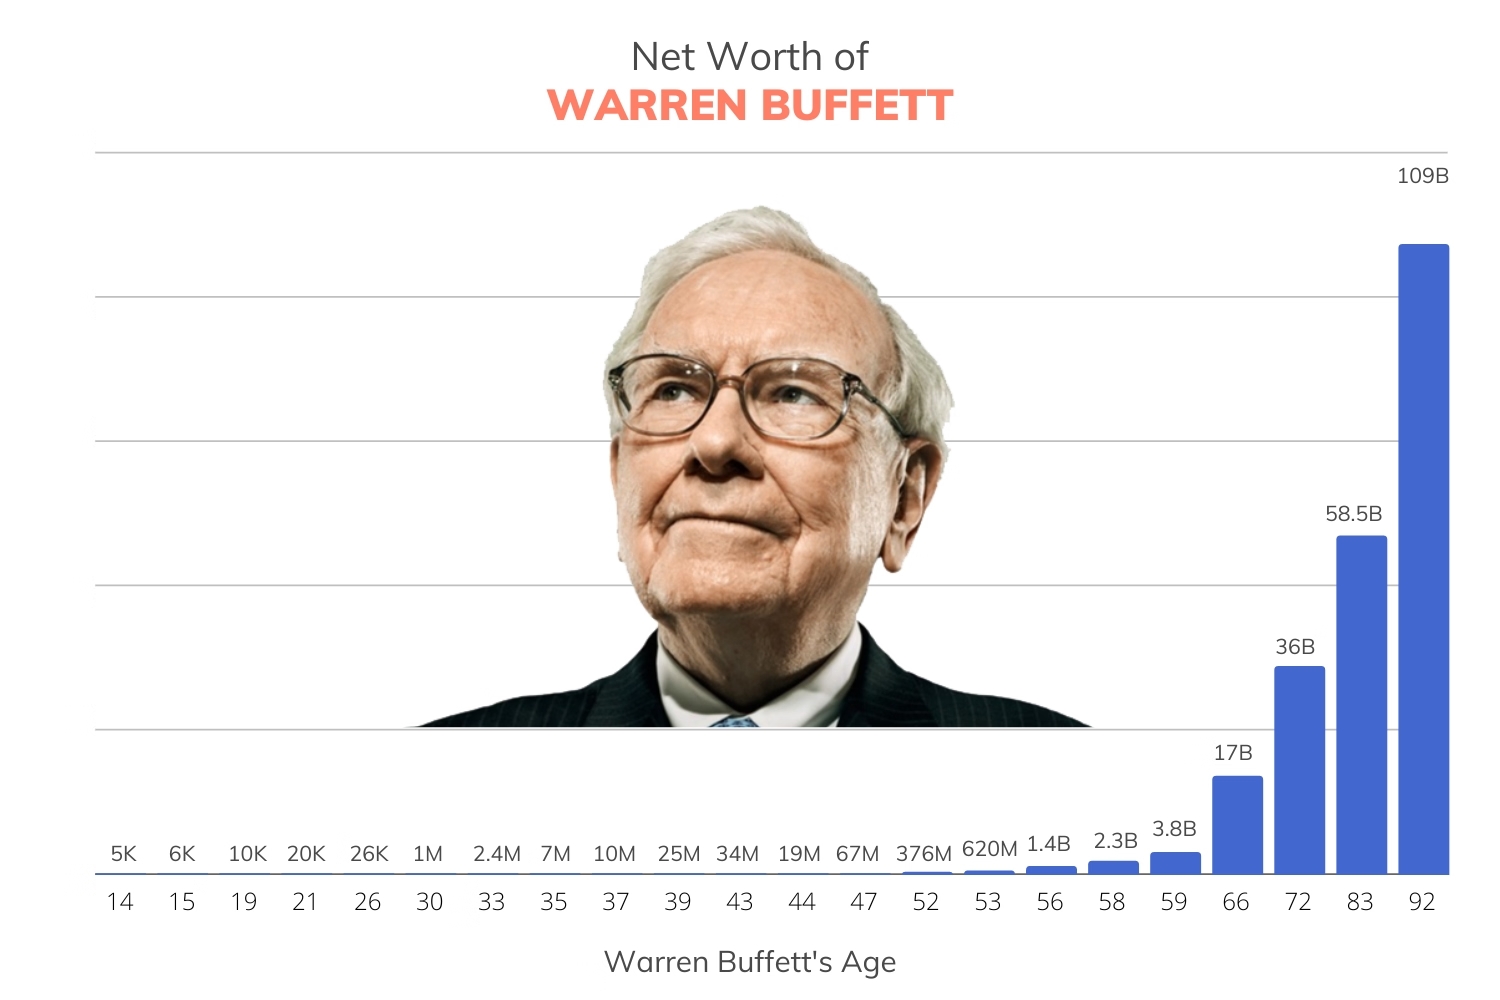 Net Worth of Warren Buffett with Portrait | FinMasters